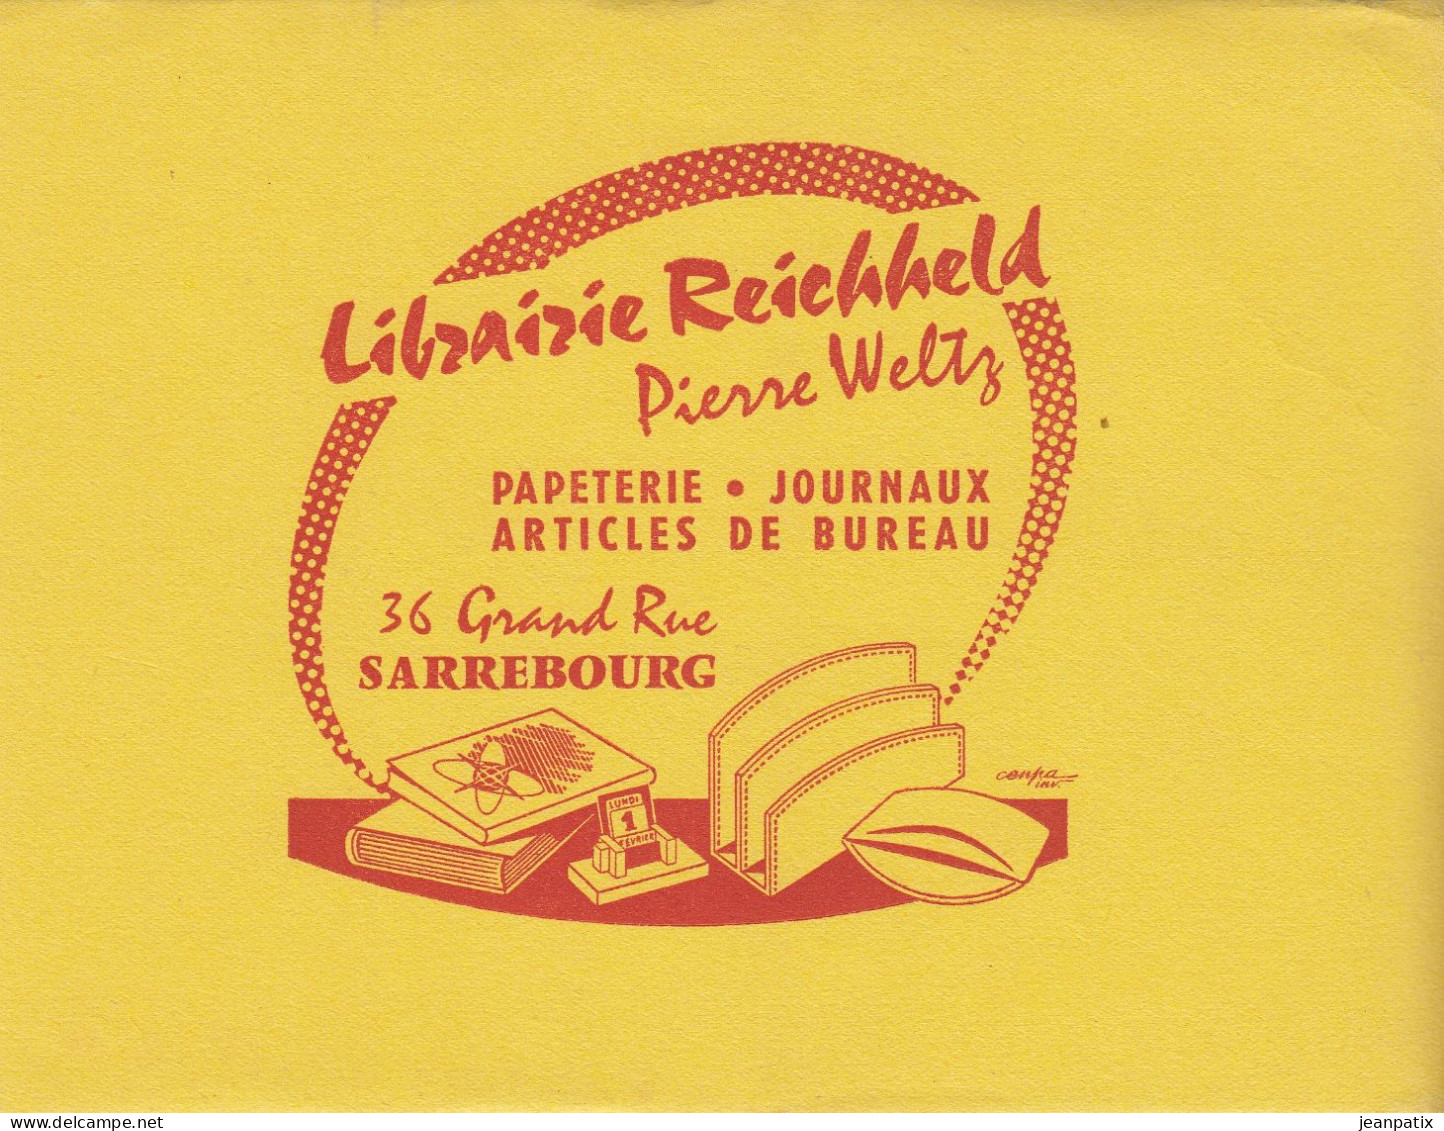 BUVARD & BLOTTER - Librairie REICHHELD - Pierre Weltz - SARREBOURG (Moselle) - Chocolade En Cacao